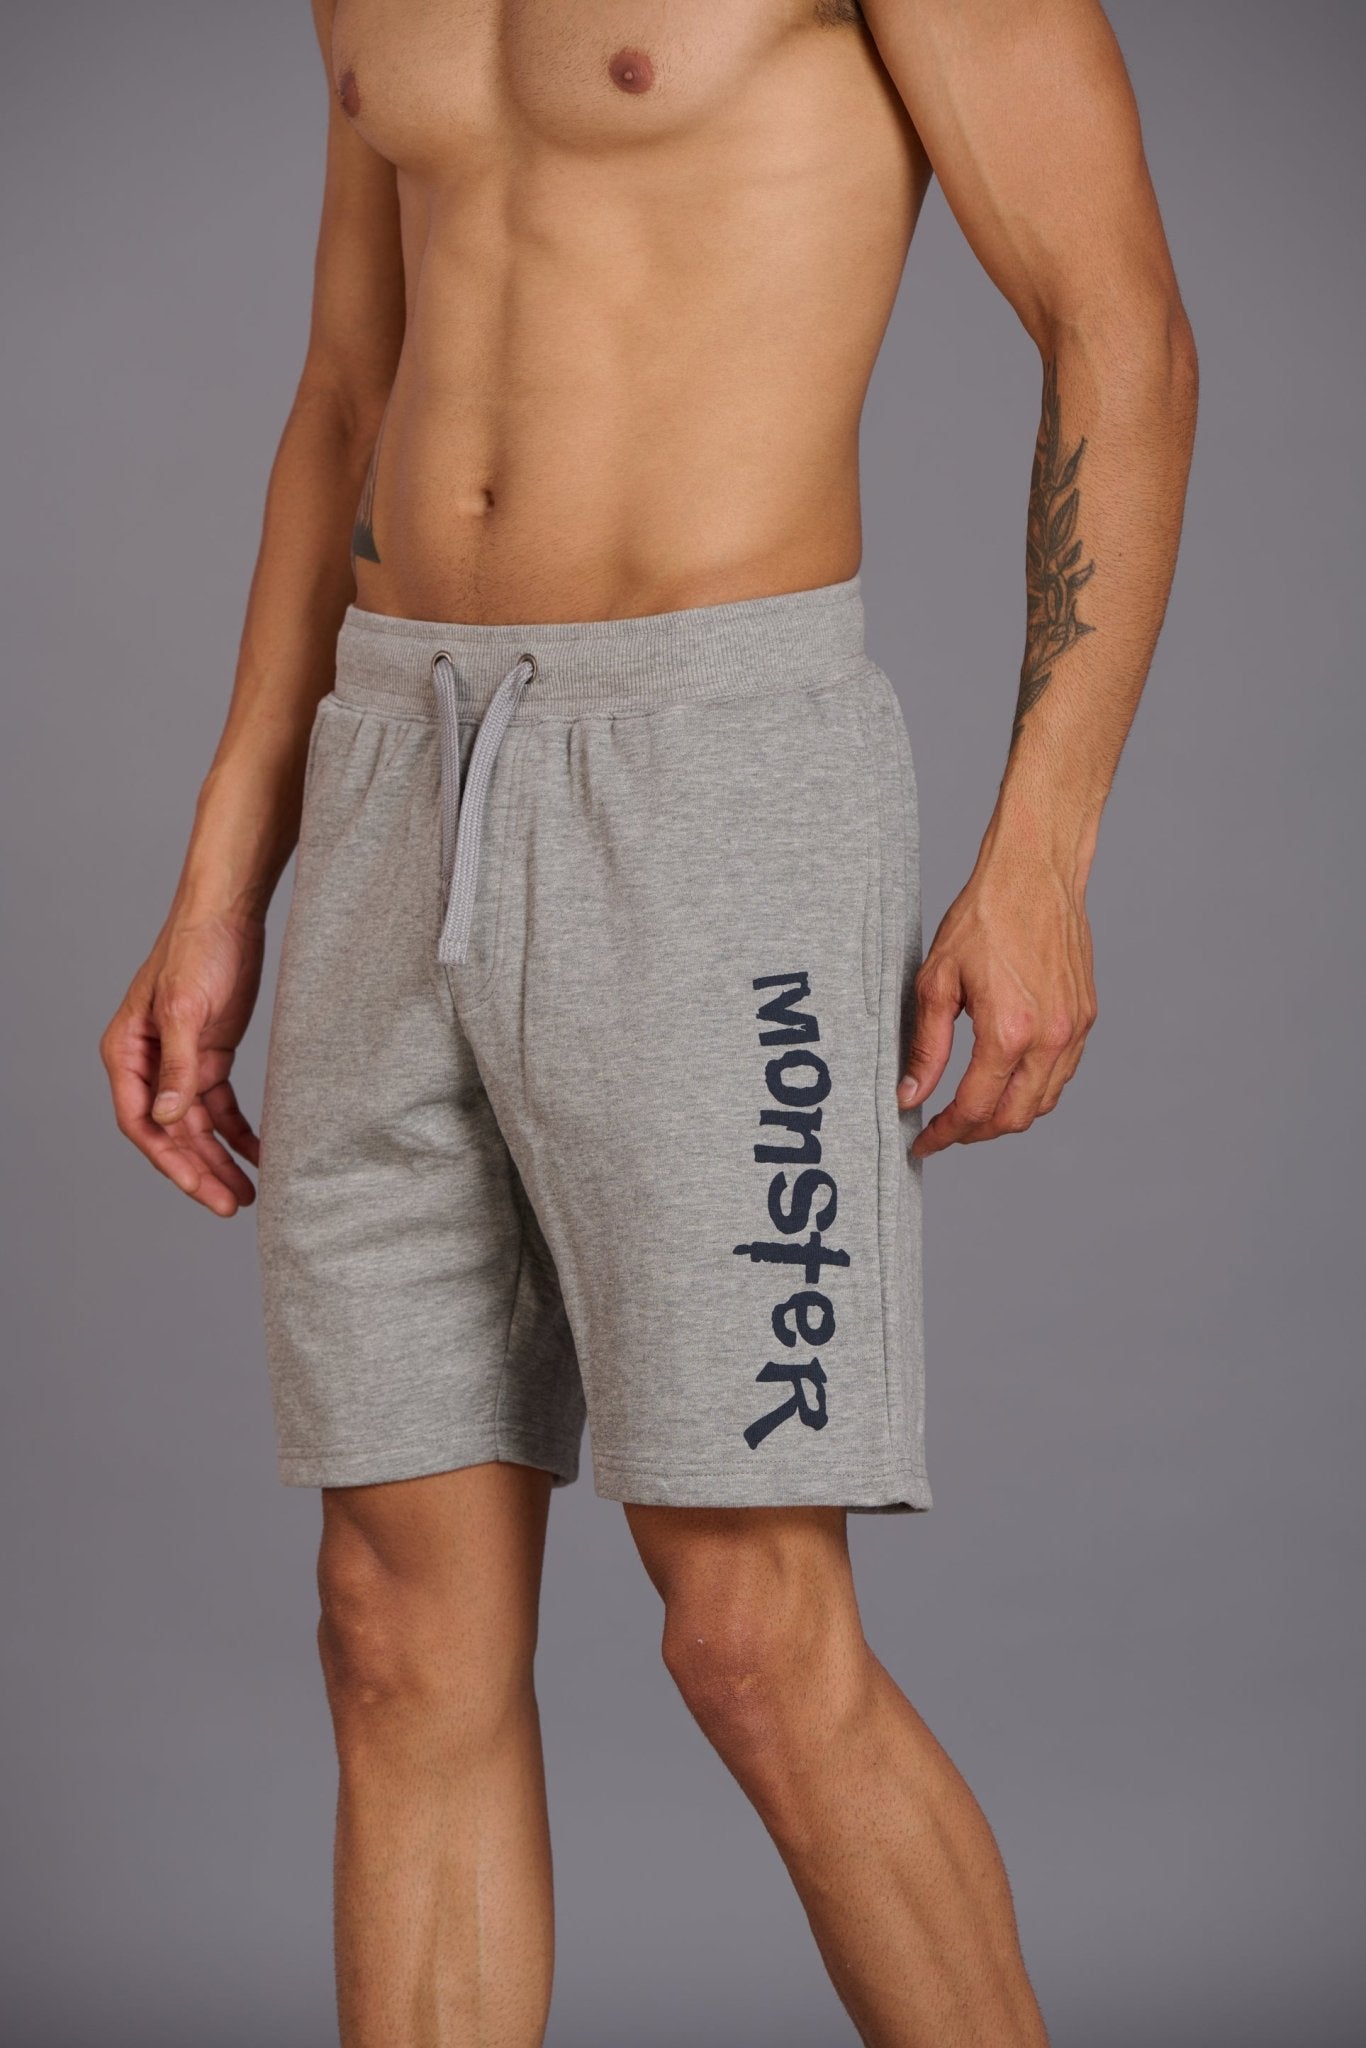 Monster Printed Grey Shorts for Men - Go Devil